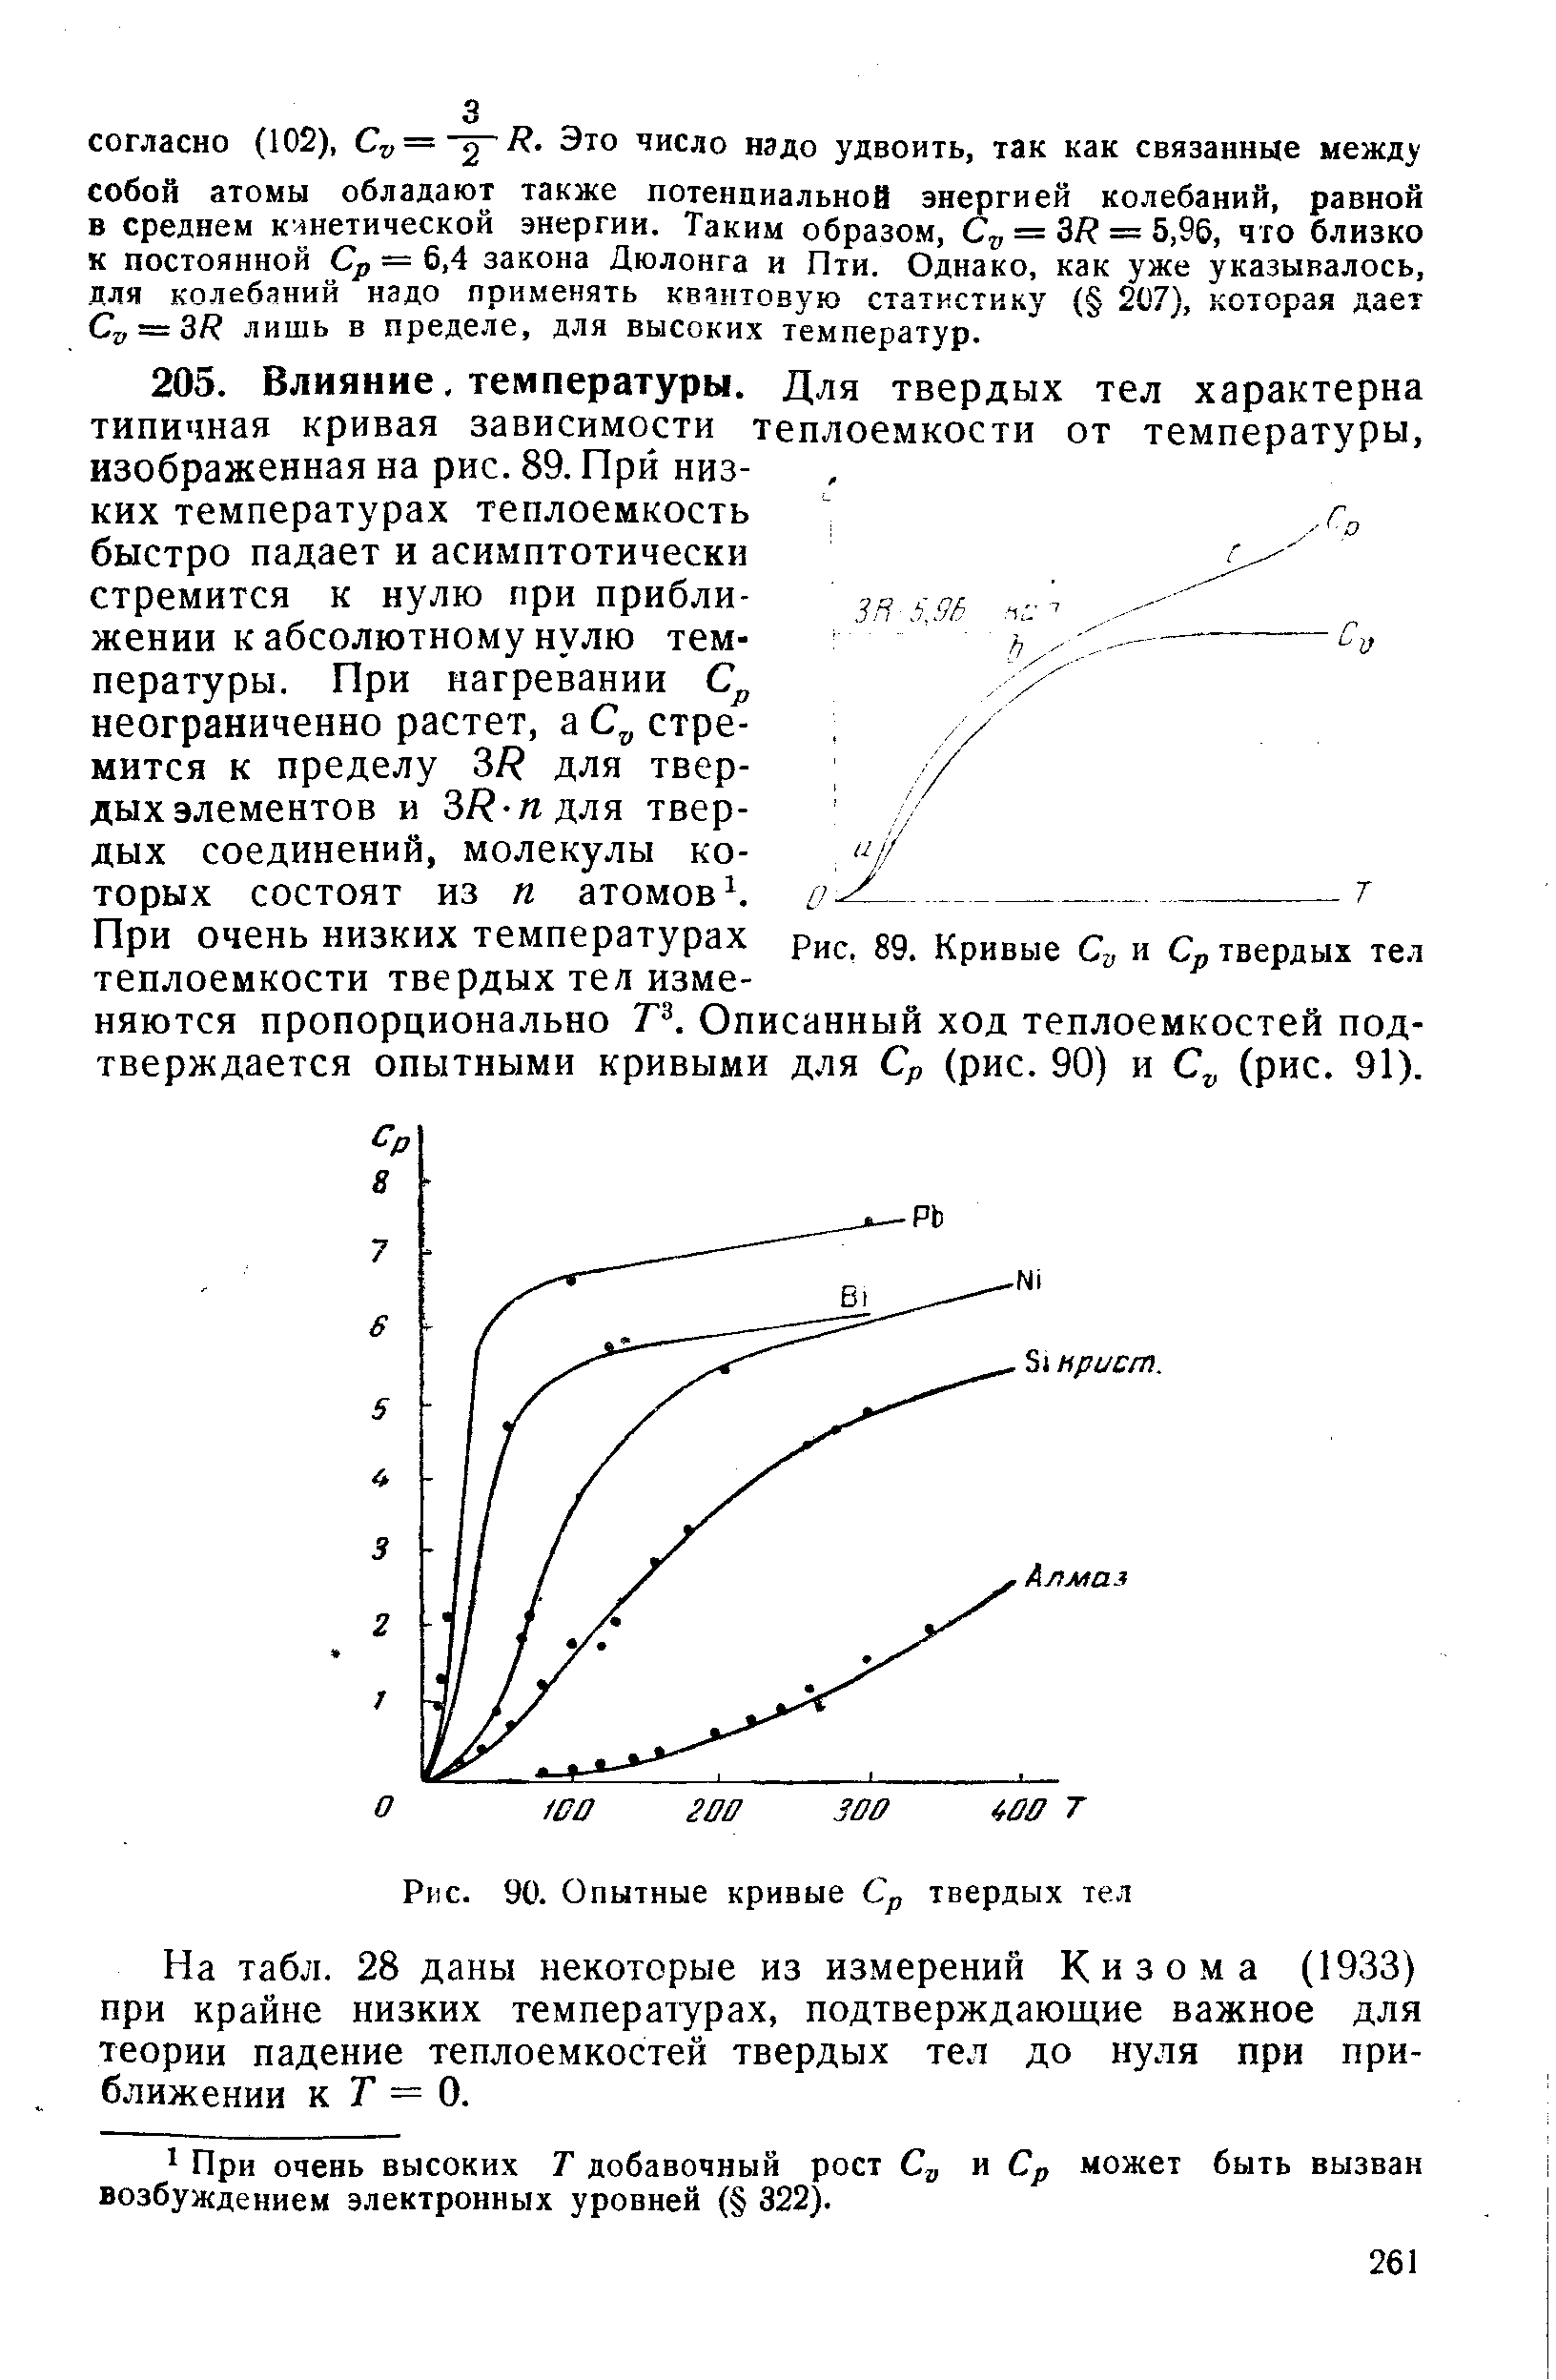 На табл. 28 даны некоторые из измерений Кизома (1933) при крайне низких темпера1урах, подтверждающие важное для теории падение теплоемкостей твердых тел до нуля при приближении к Г = 0.